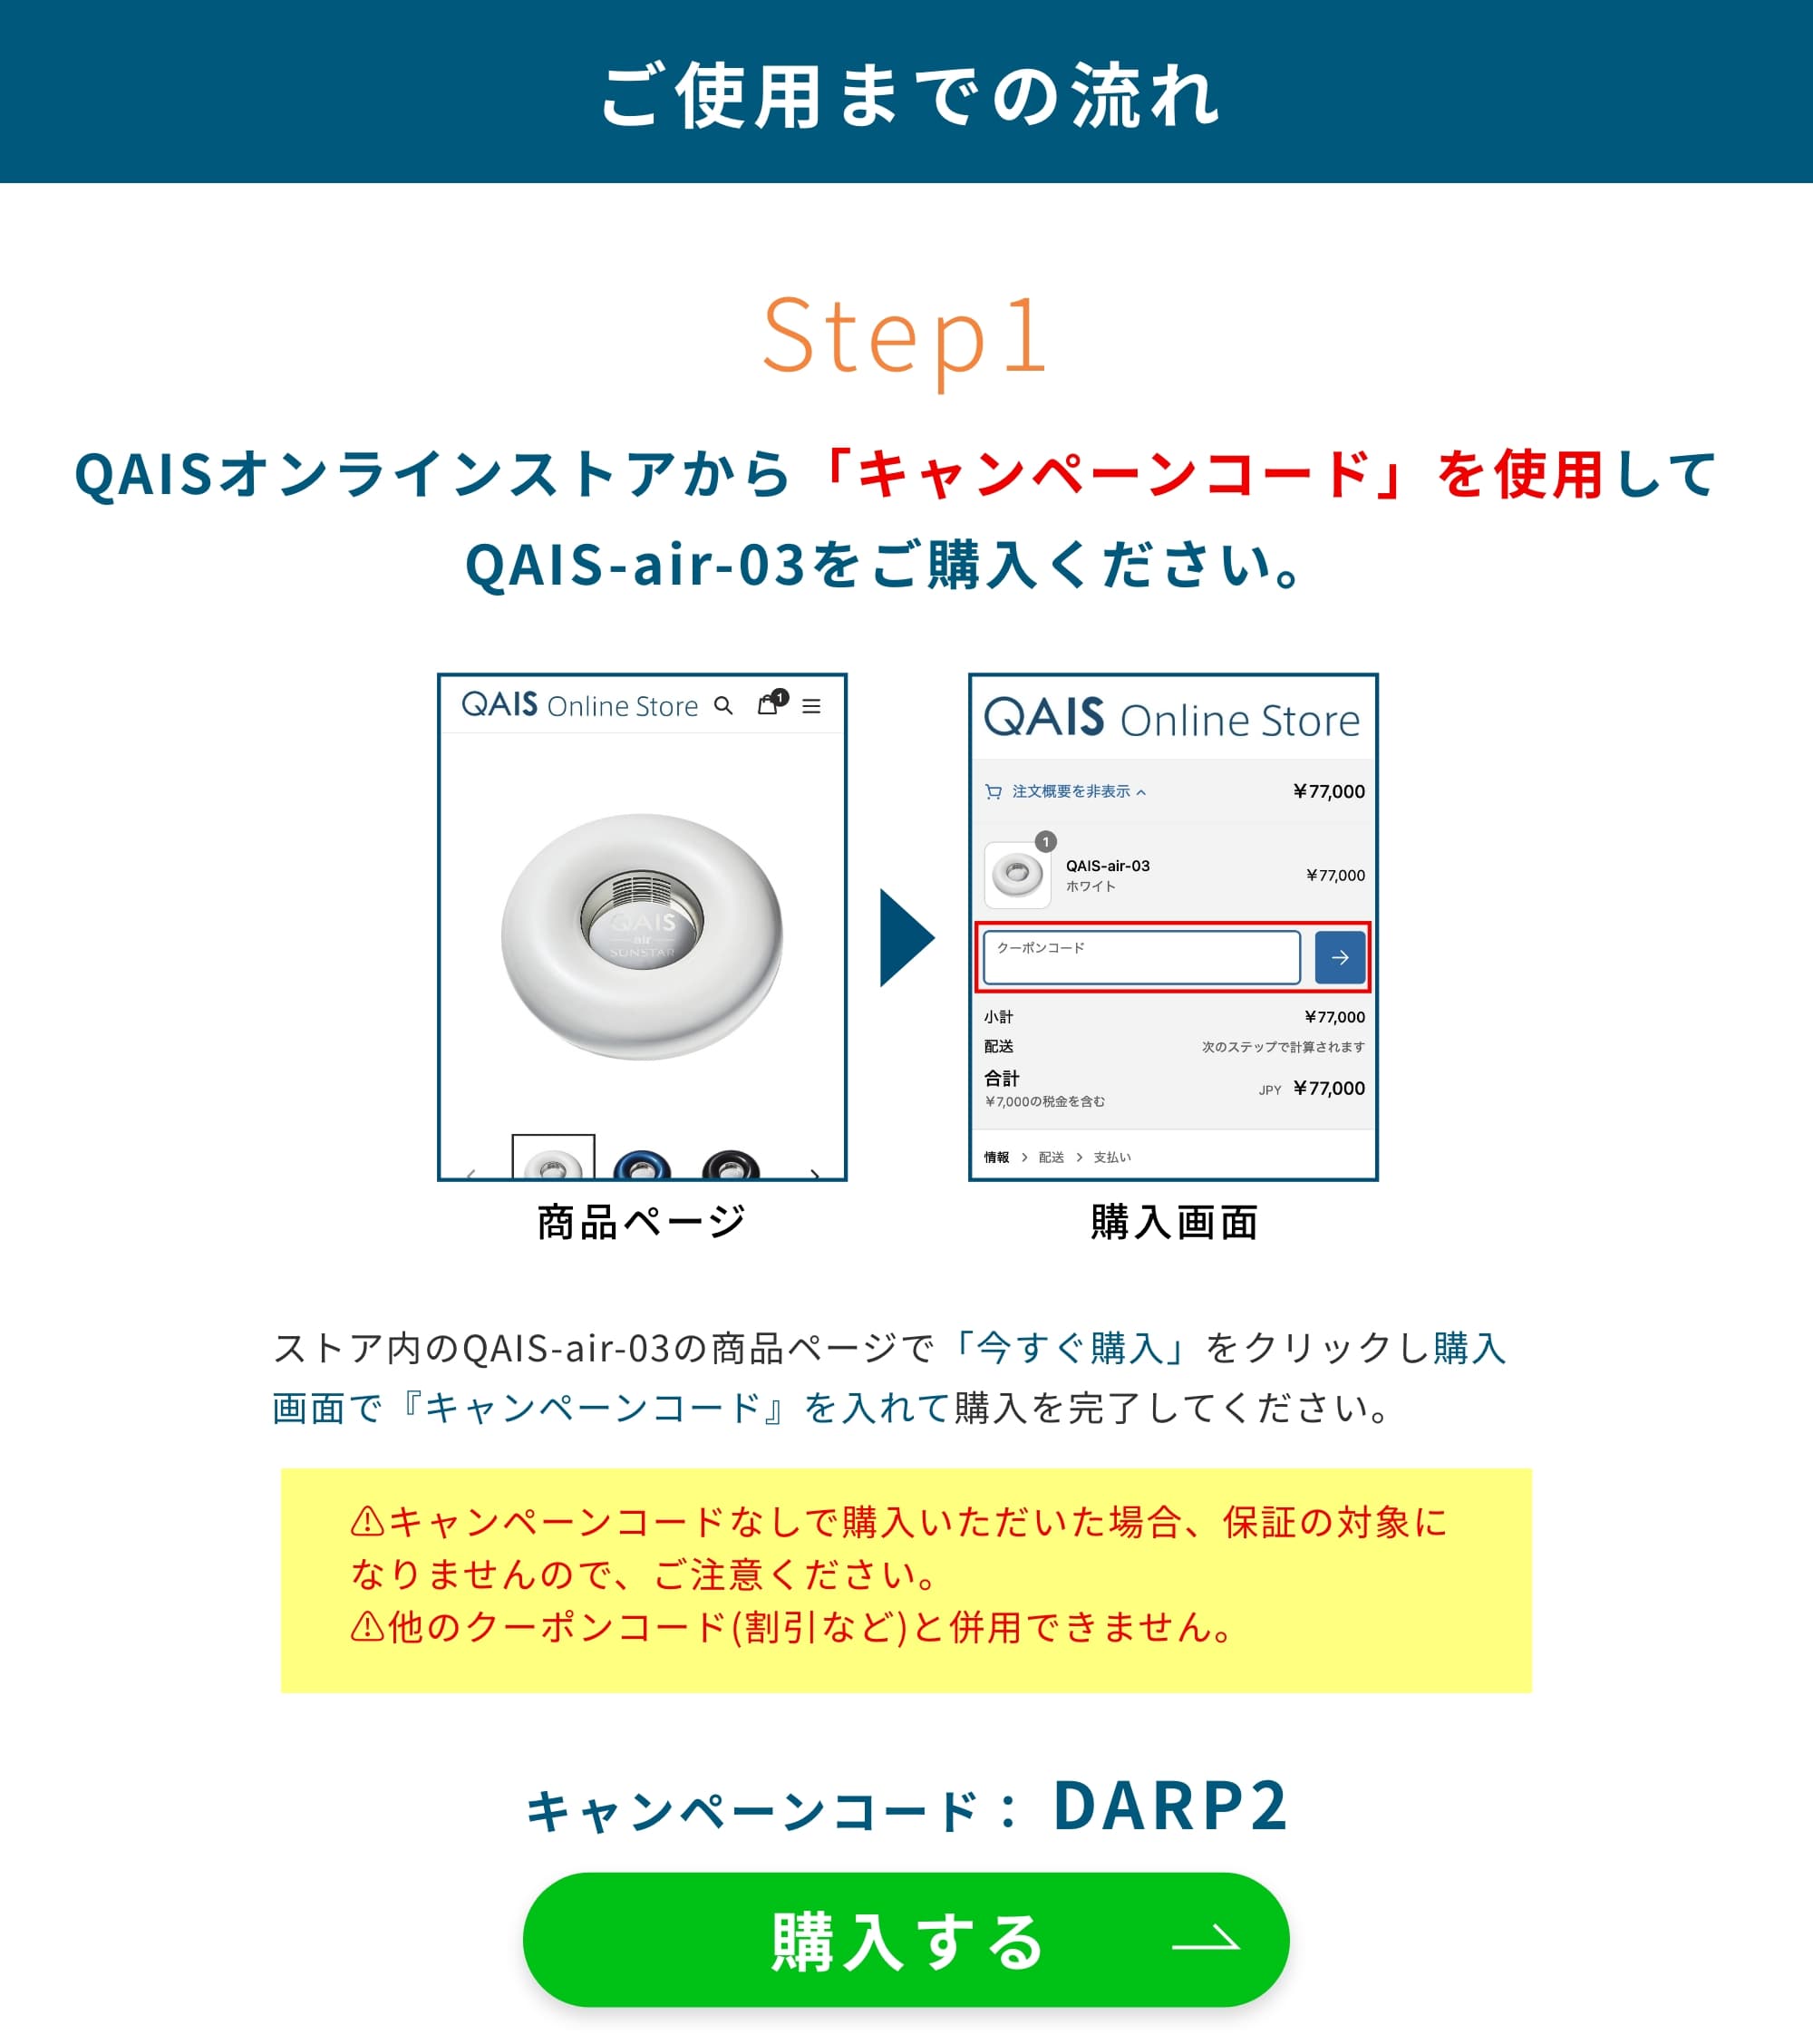 ご使用までの流れ　キャンペーンコード： DARP2